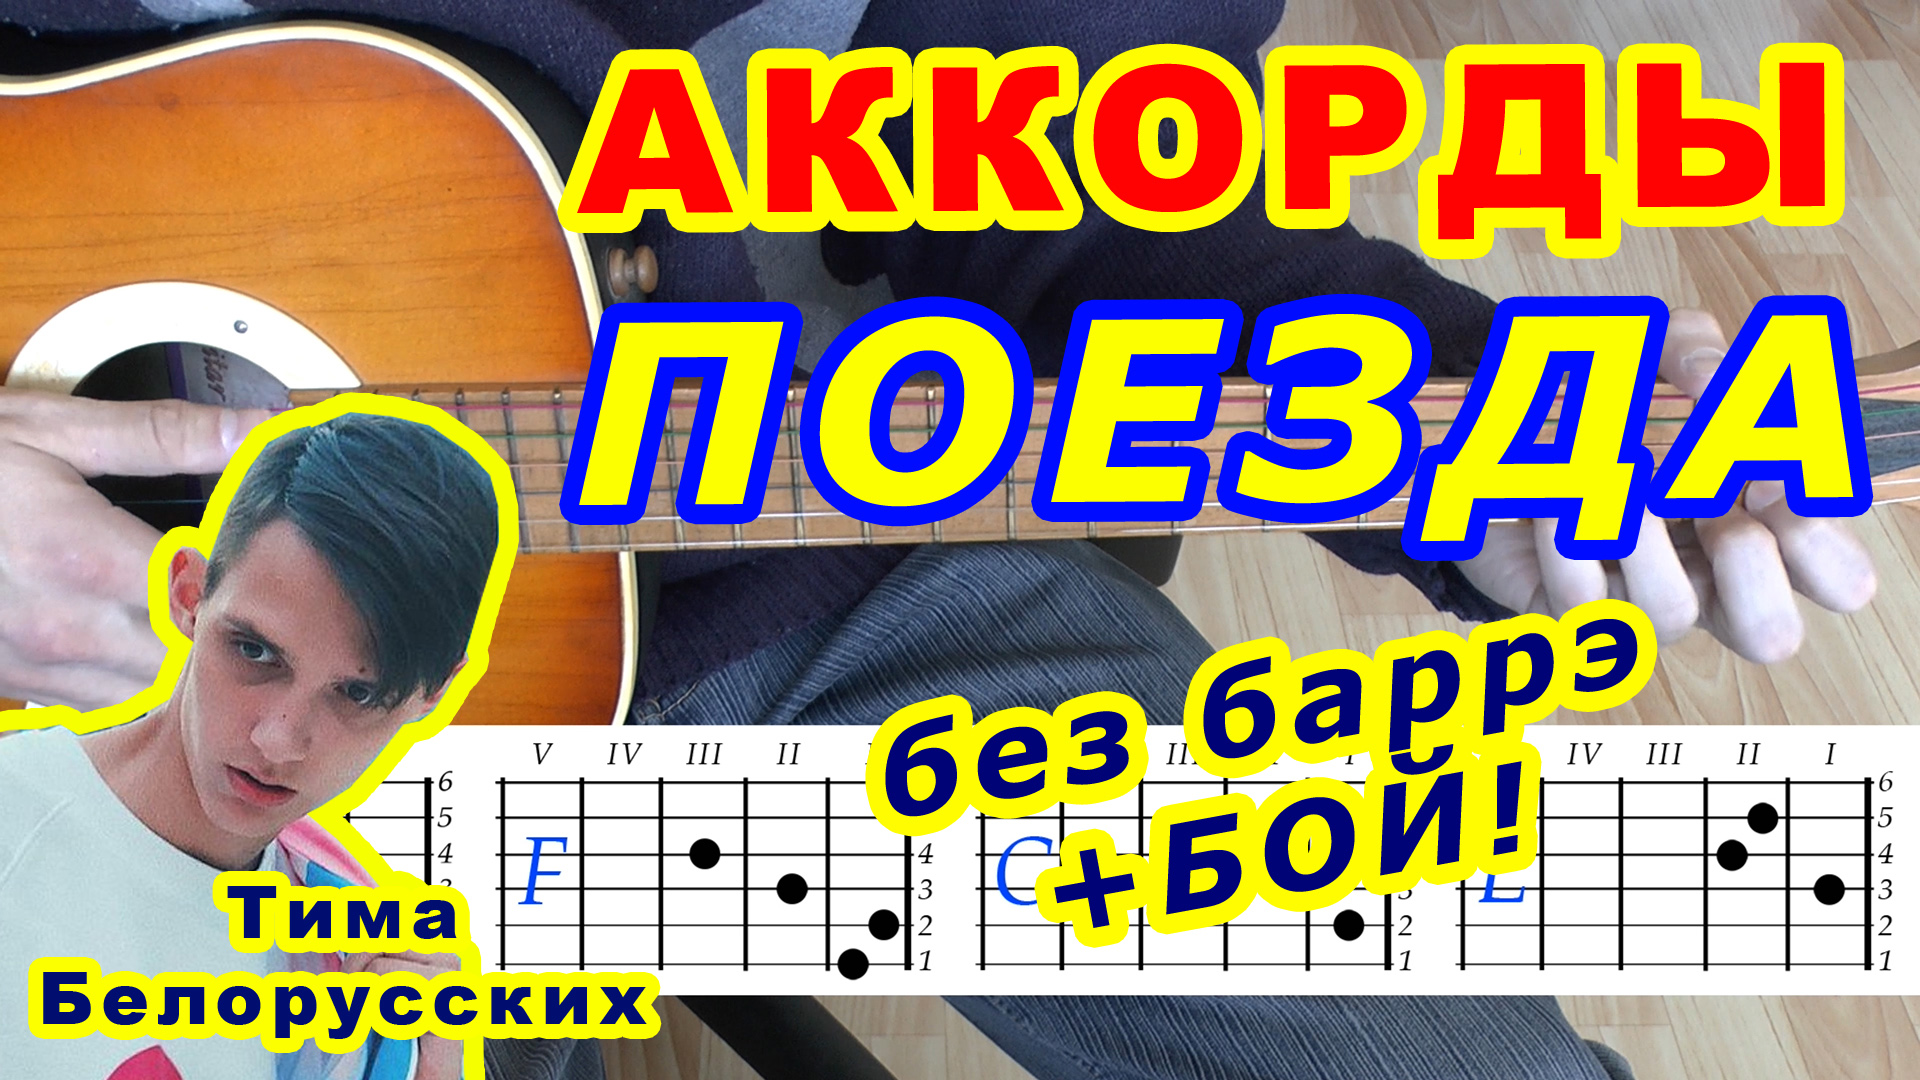 Последняя электричка аккорды. Аккорды для гитары. Тима белорусских аккорды. Поезда Тима белорусских аккорды. Поезда аккорды на гитаре.